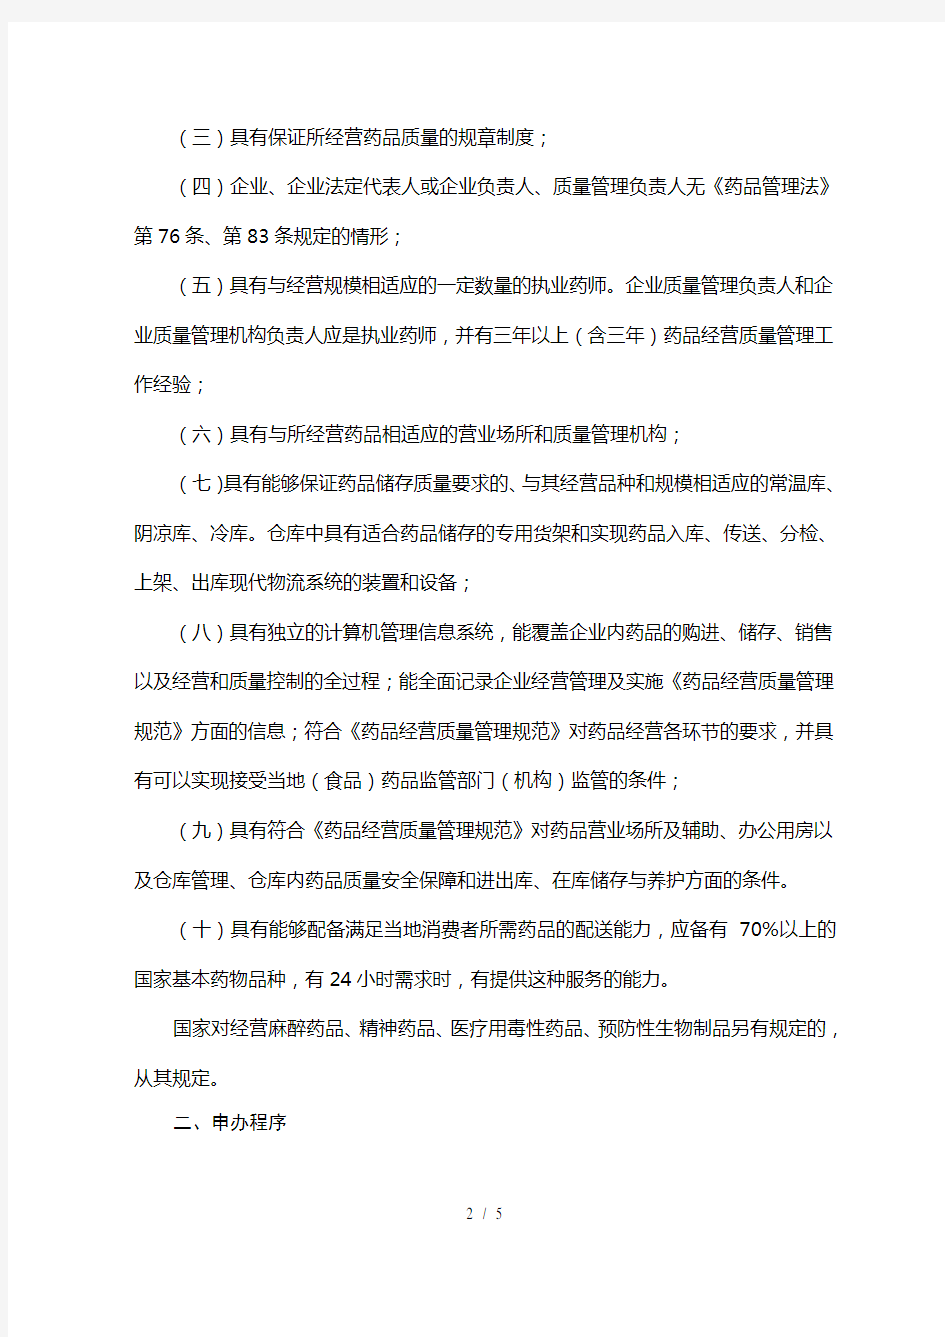 河北省开办药品零售连锁企业审批程序